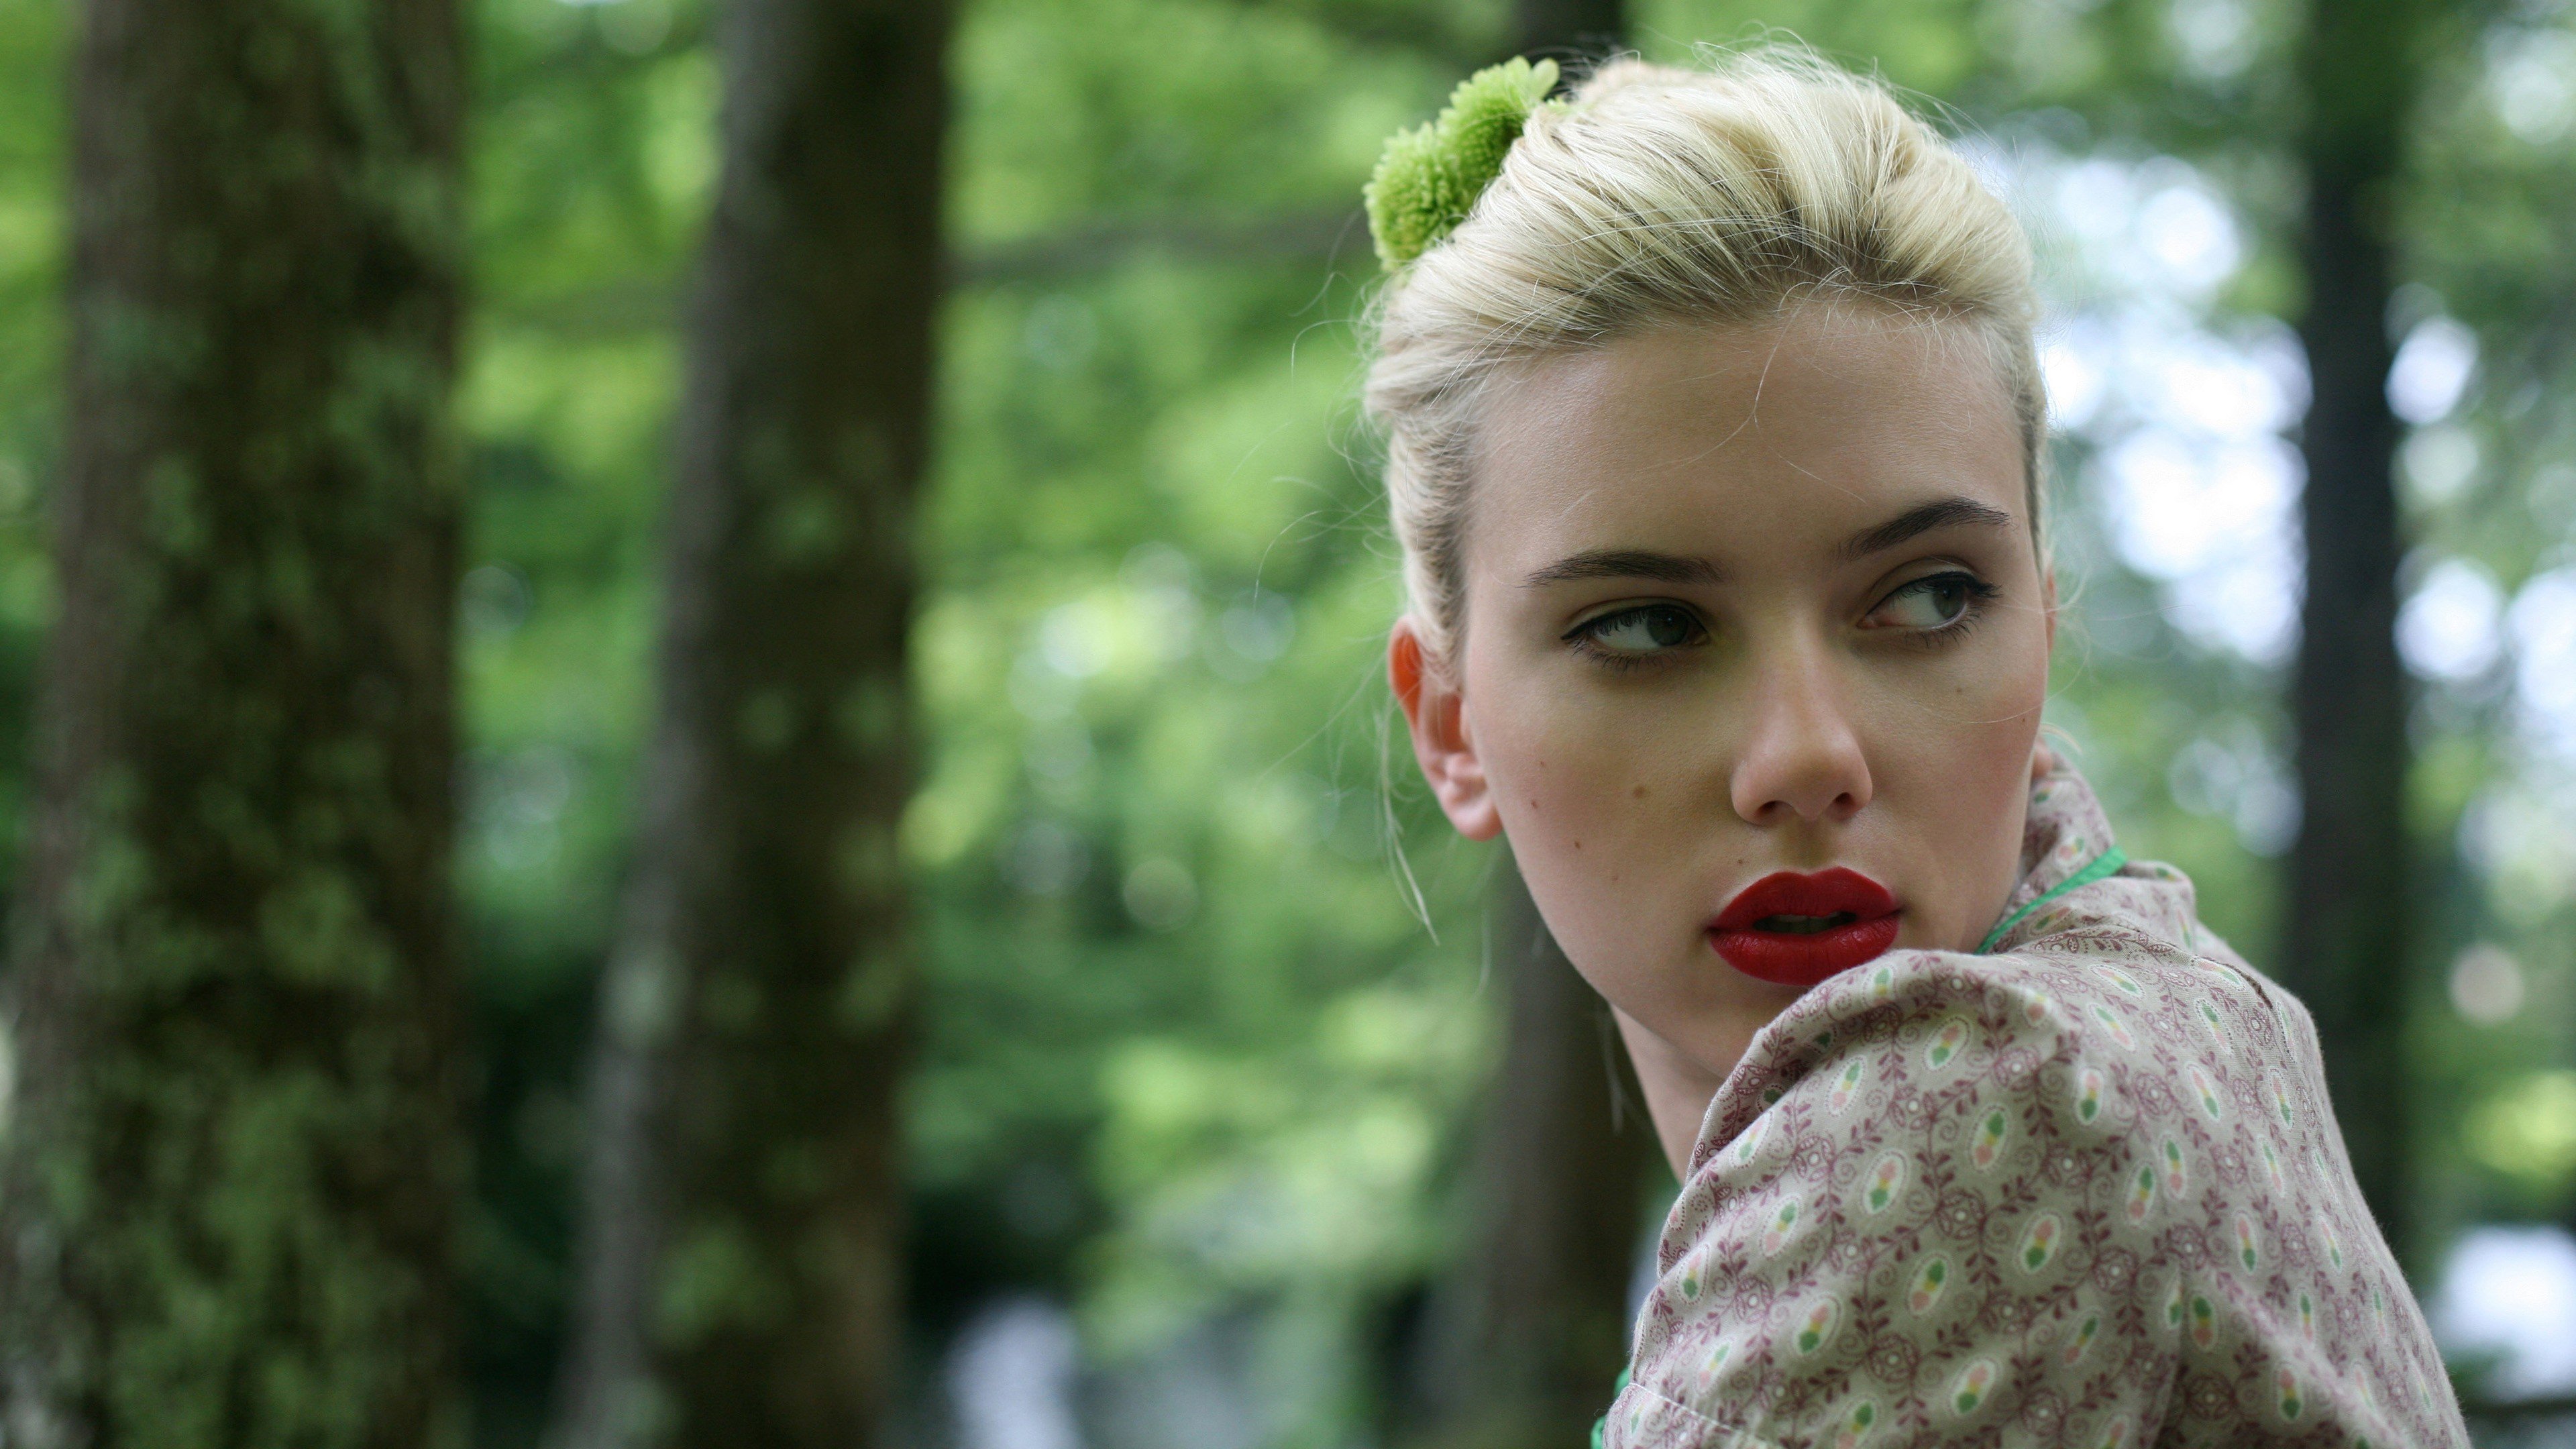 Fondos de pantalla Scarlett Johansson en el bosque